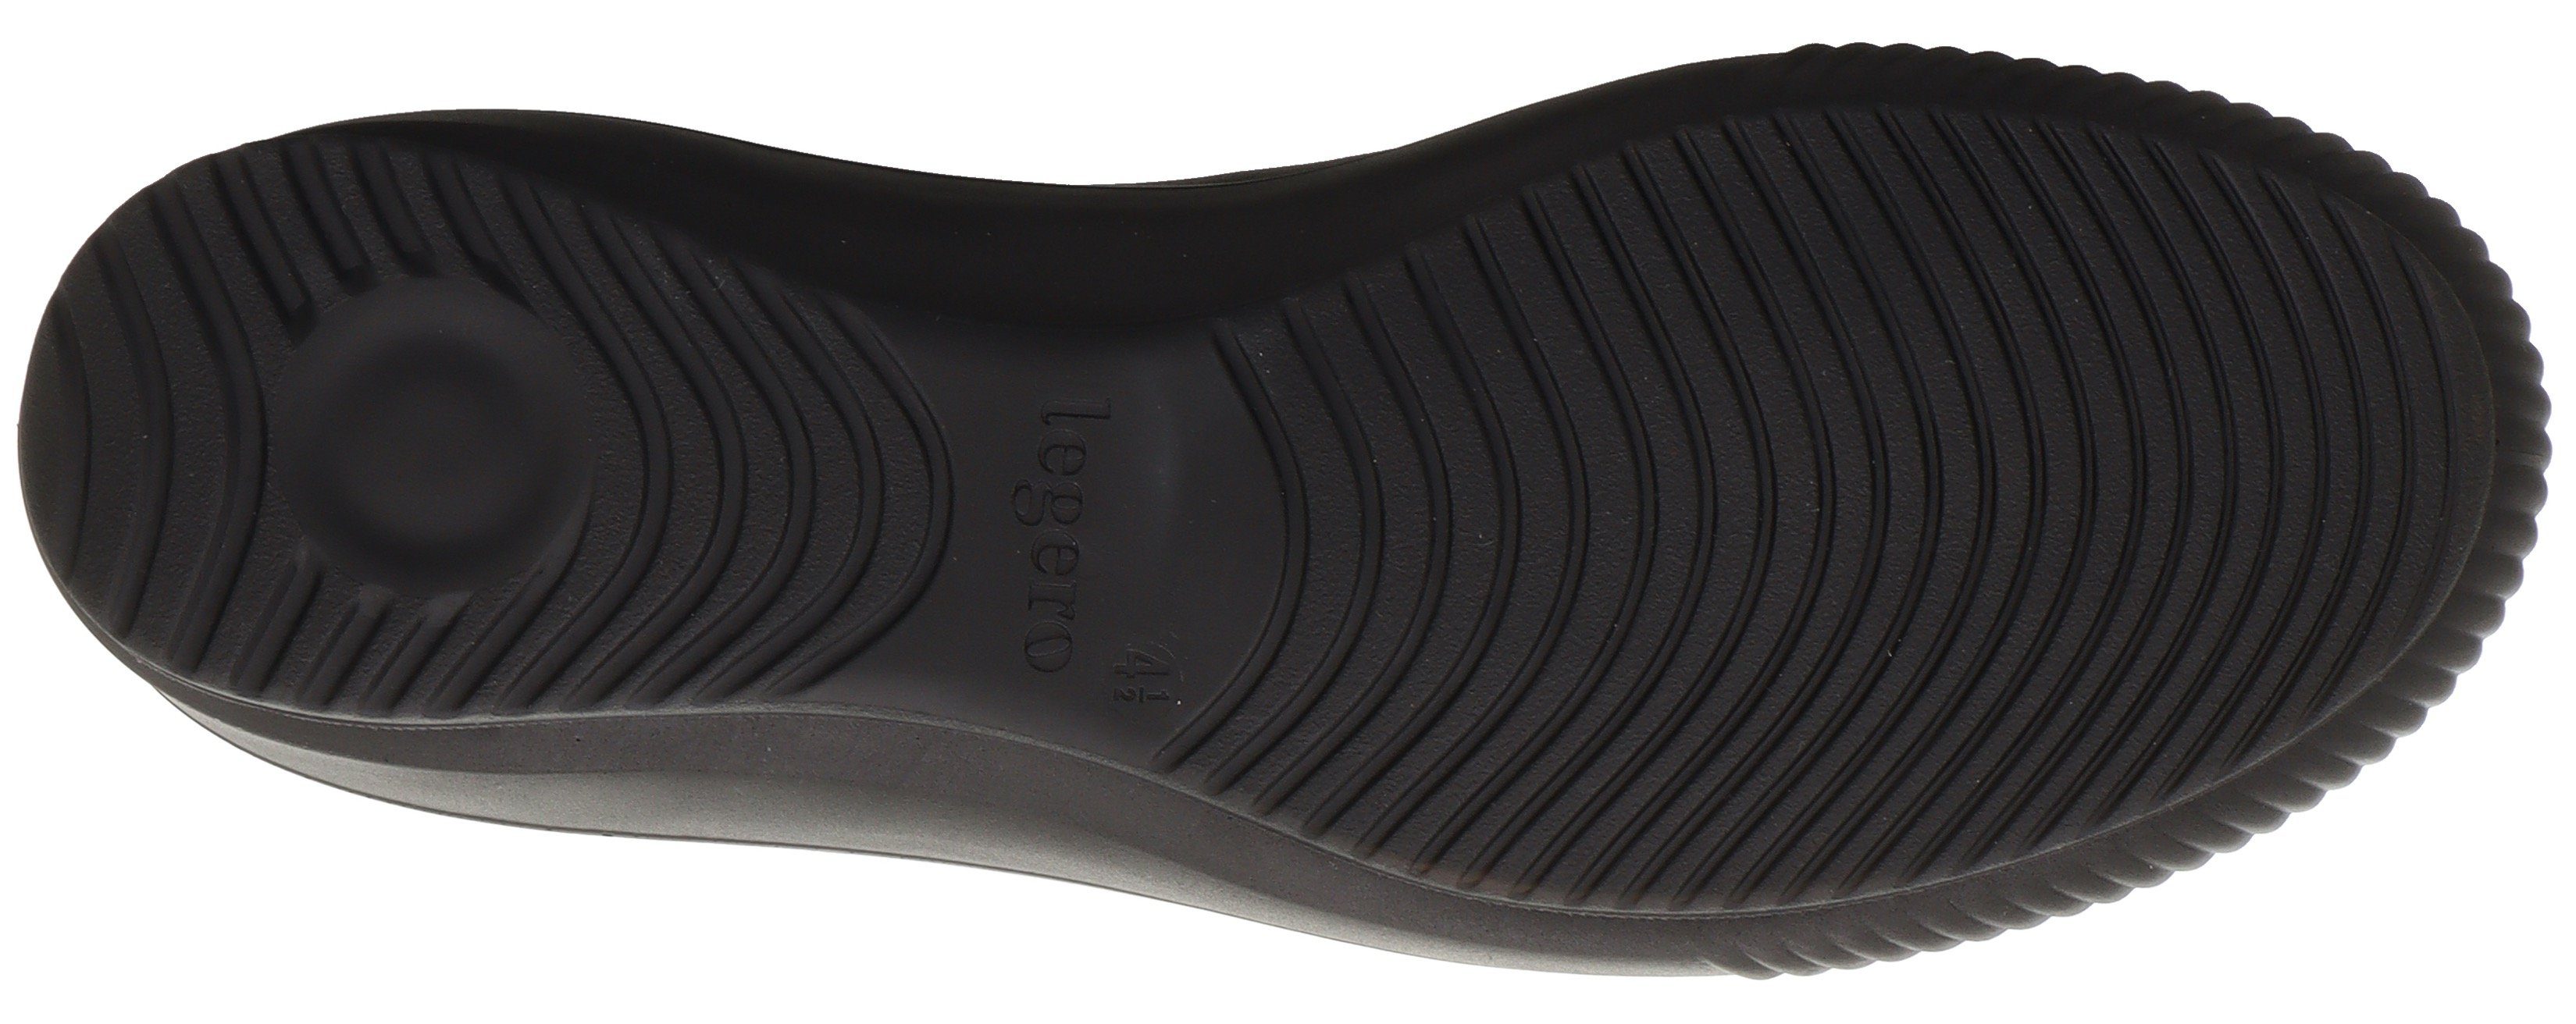 TANARO mit 5.0 Legero schwarz seitlichem Reißverschluss Sneaker